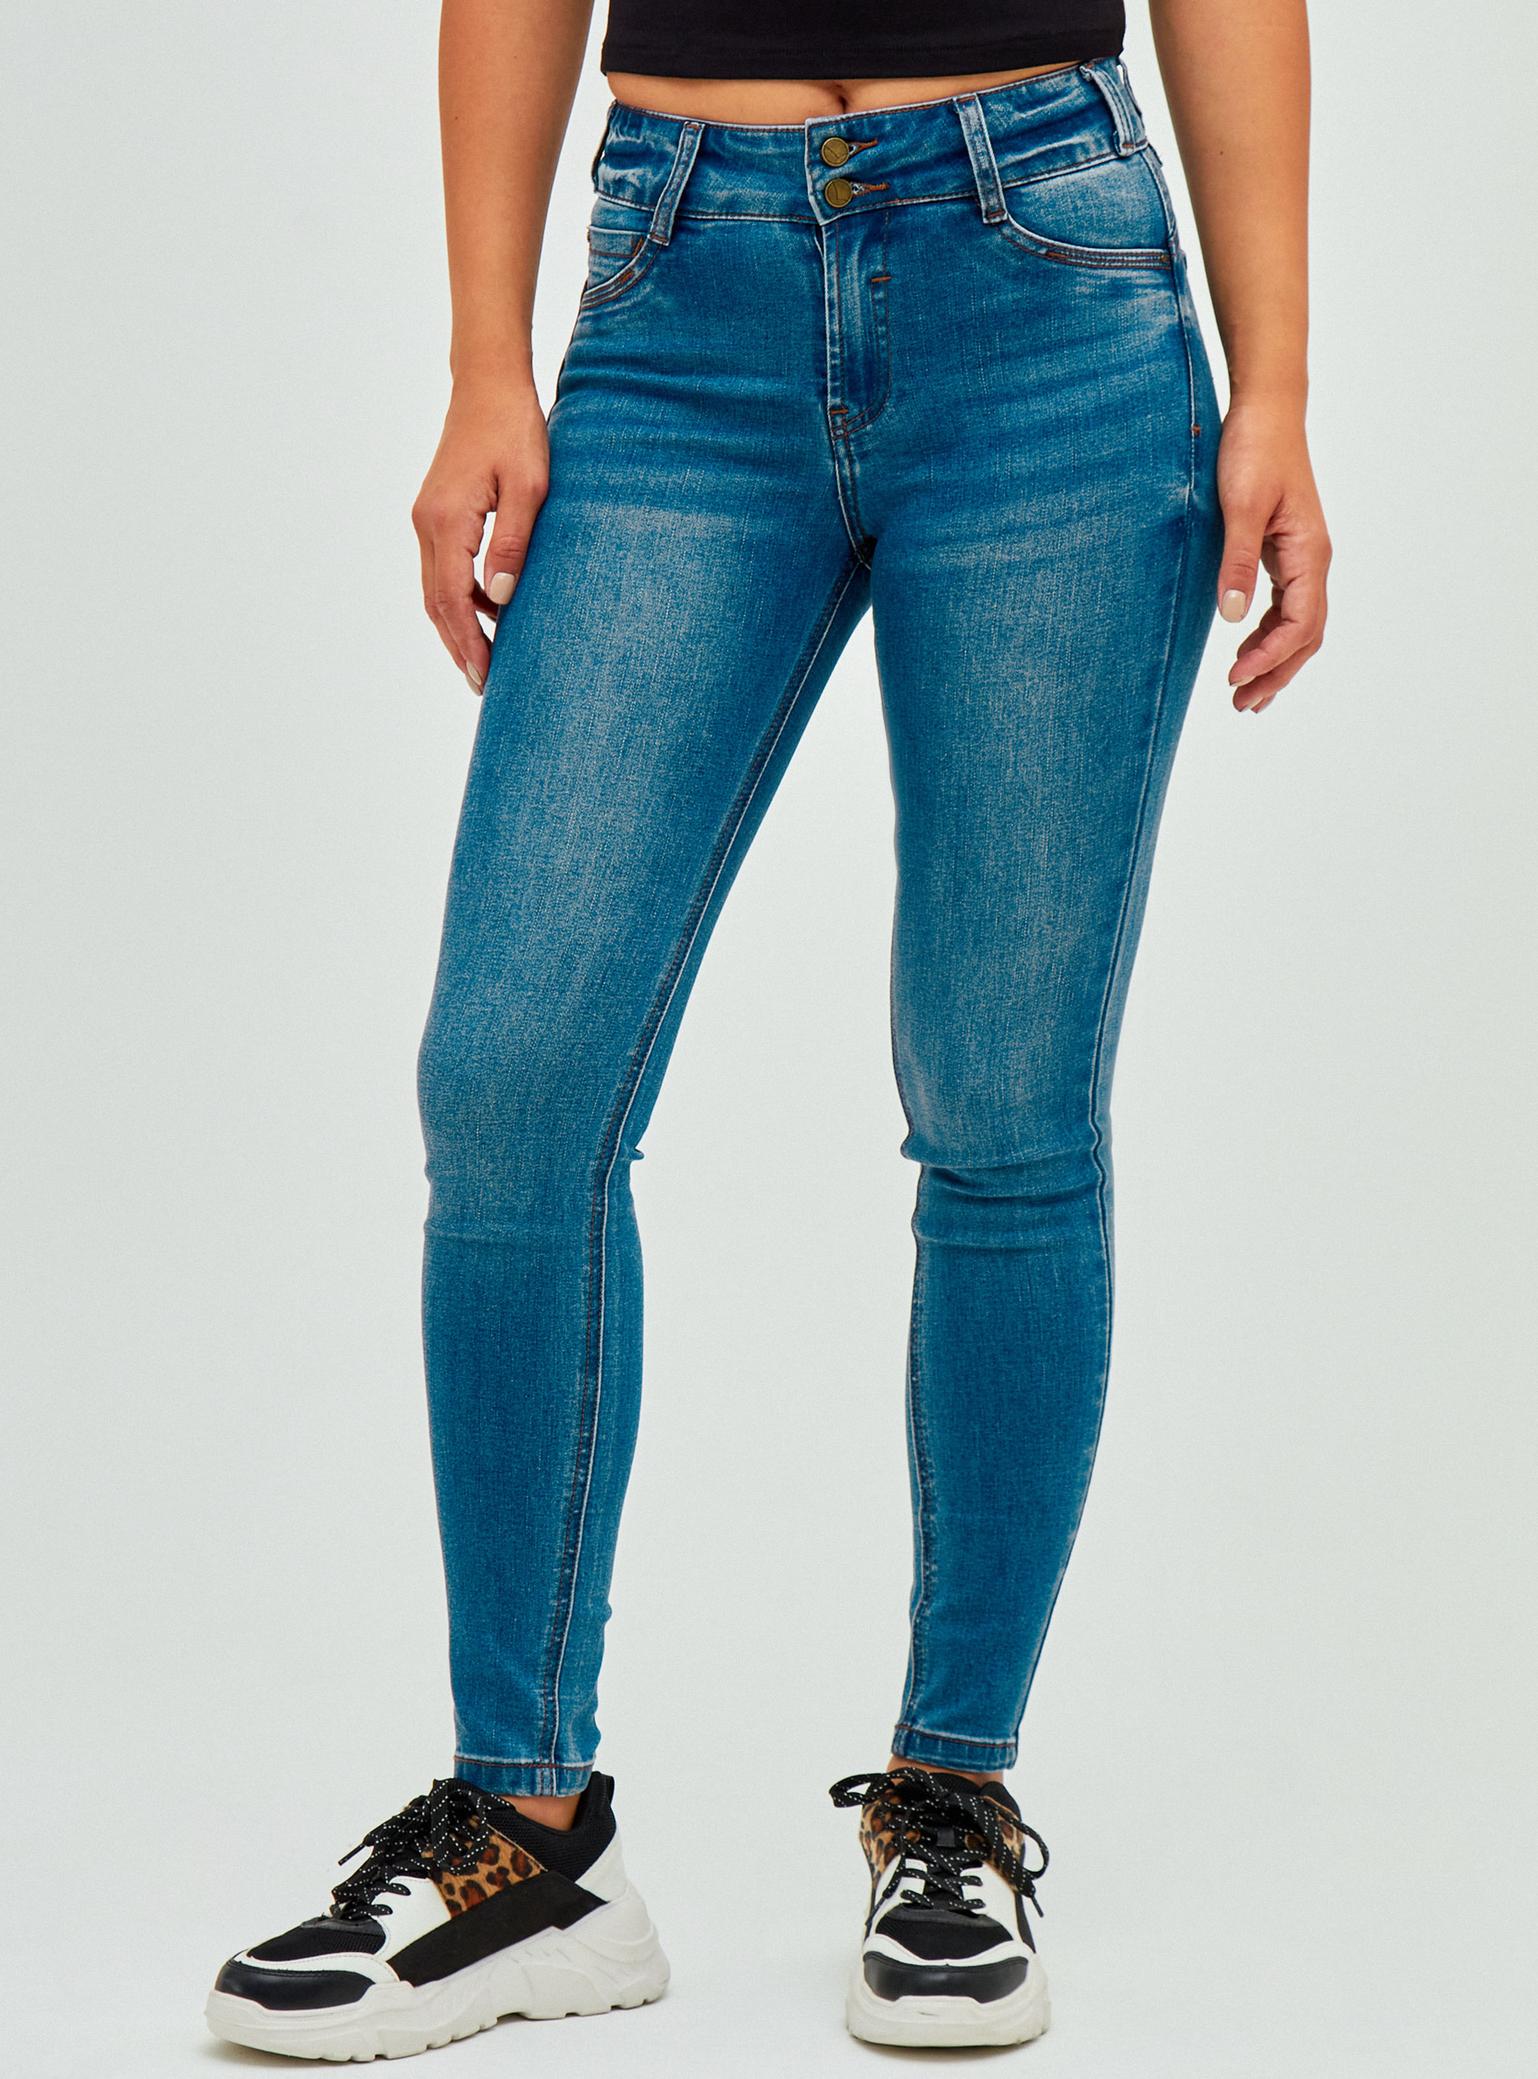 Oferta de Jeans Skinny Push Up por $10490 en Paris